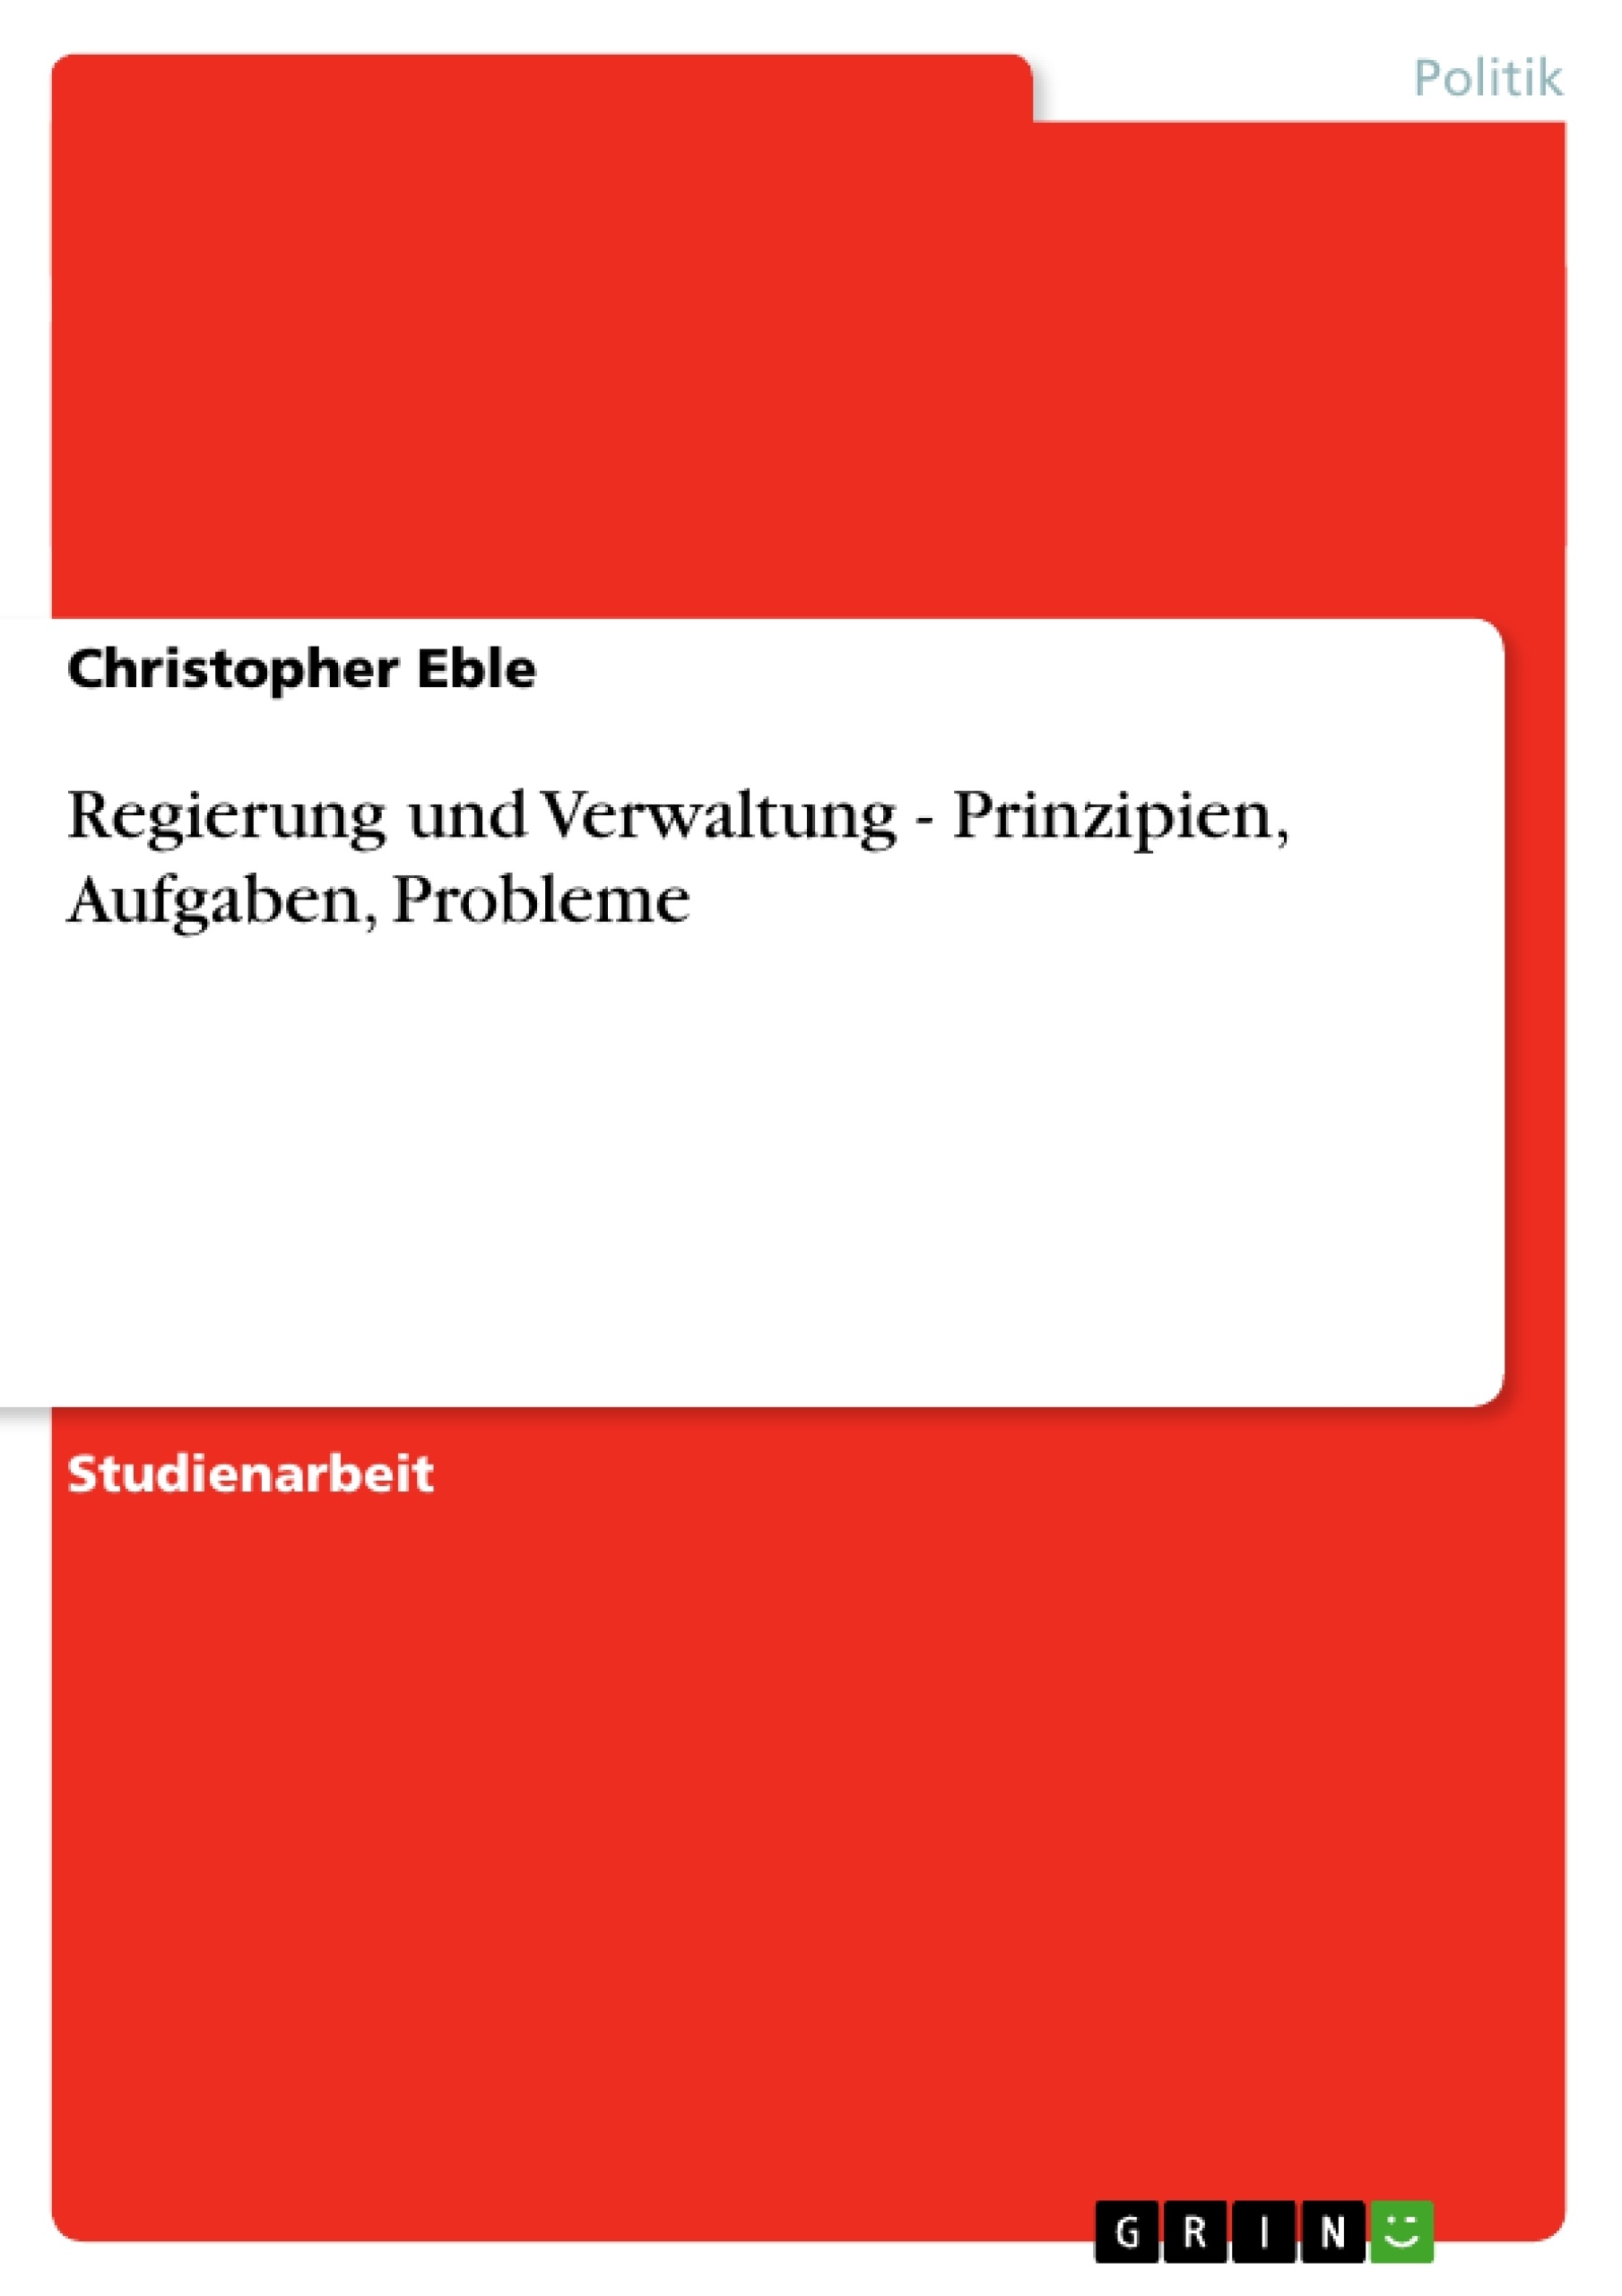 Title: Regierung und Verwaltung - Prinzipien, Aufgaben, Probleme